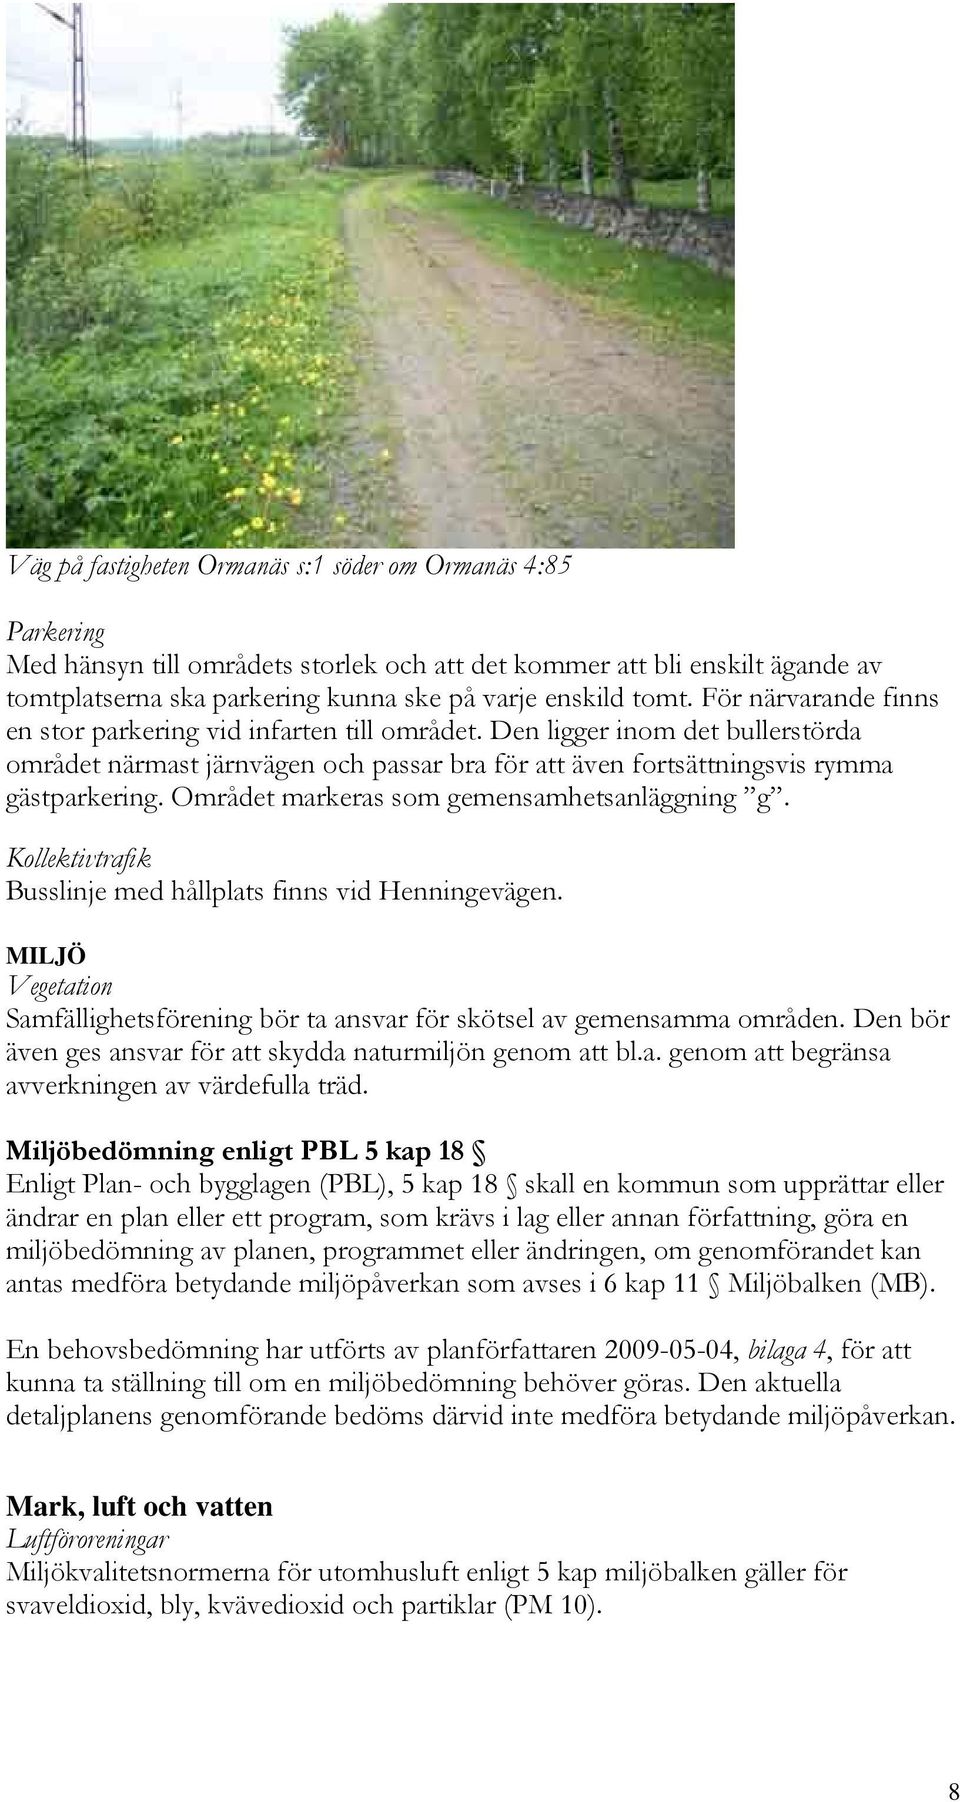 Området markeras som gemensamhetsanläggning g. Kollektivtrafik Busslinje med hållplats finns vid Henningevägen. MILJÖ Vegetation Samfällighetsförening bör ta ansvar för skötsel av gemensamma områden.